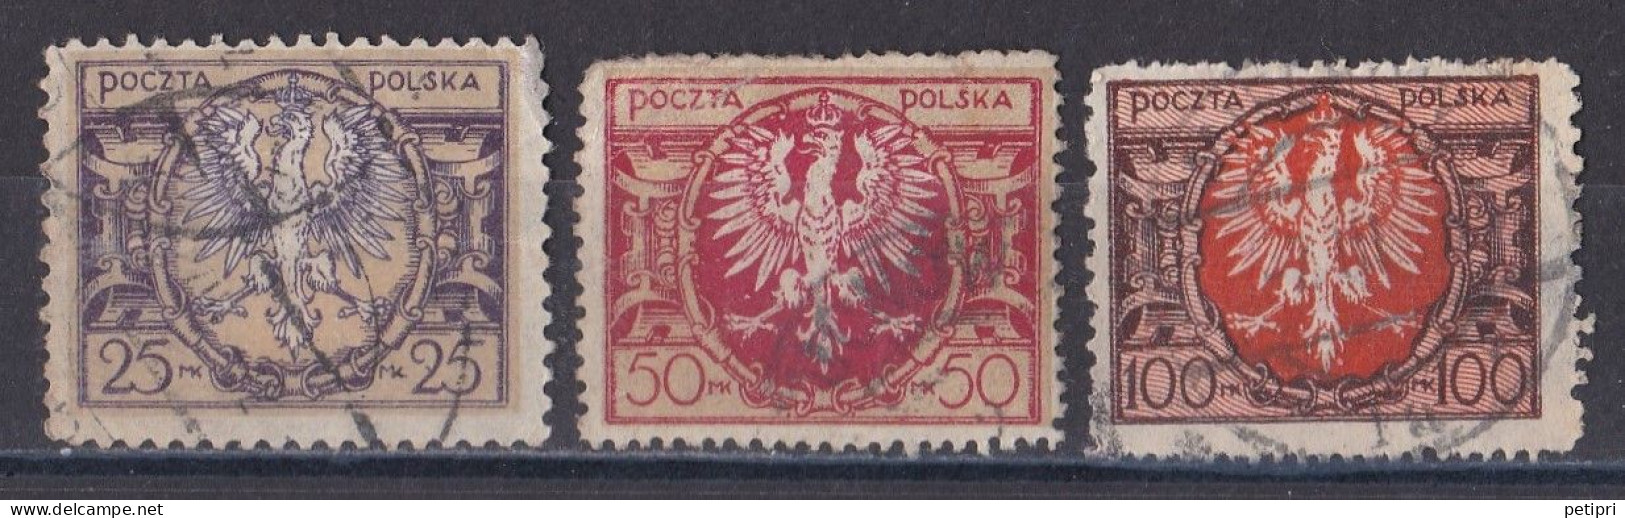 Pologne - République 1919  -  1939   Y & T N °  227   228   229  Oblitérés - Used Stamps